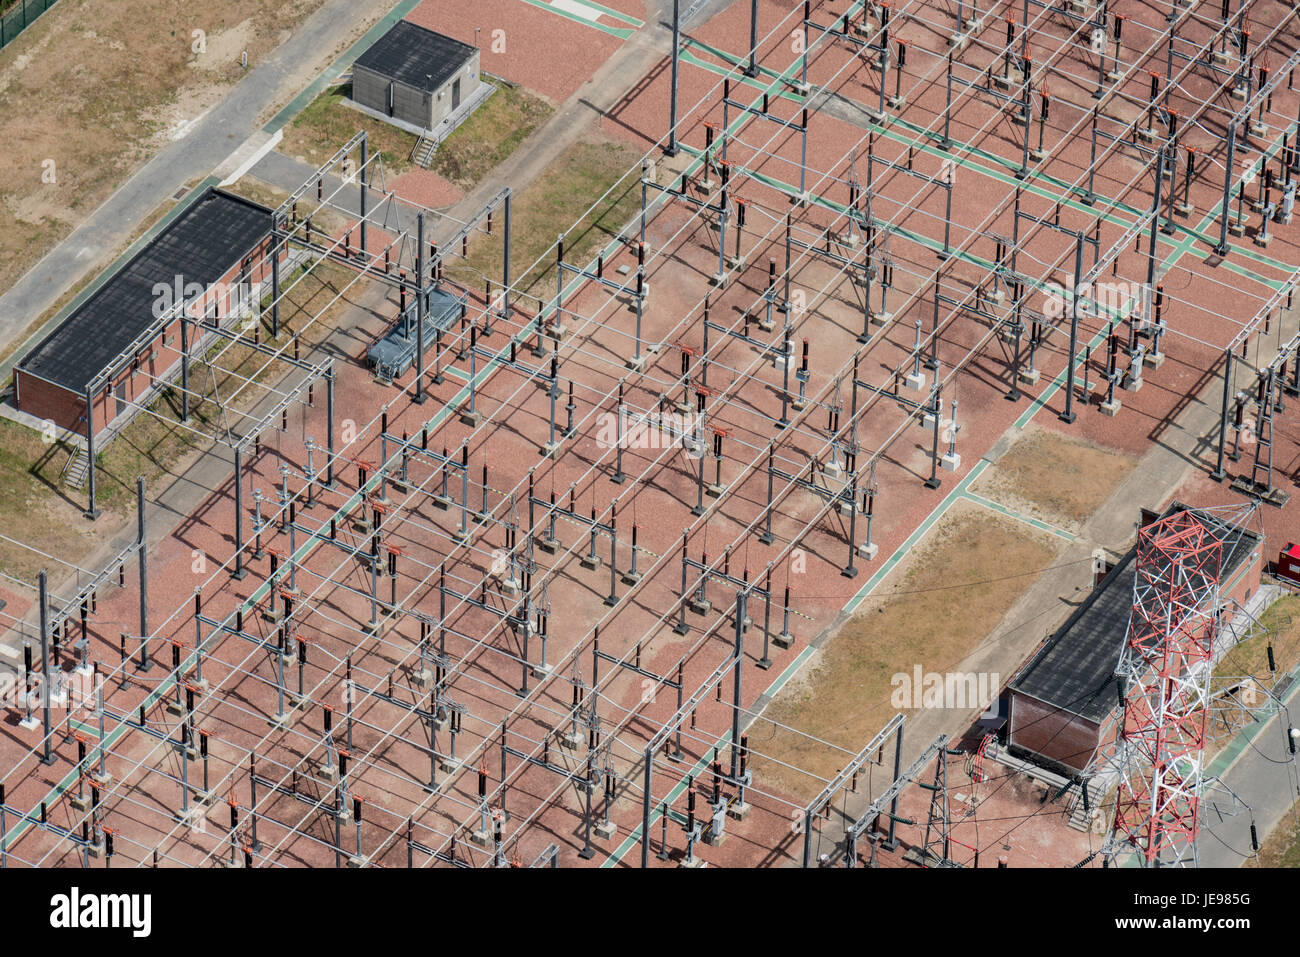 Fotografia aerea di Engie Electrabel impianti vicino al Scaldis training center presso il porto di Anversa Foto Stock